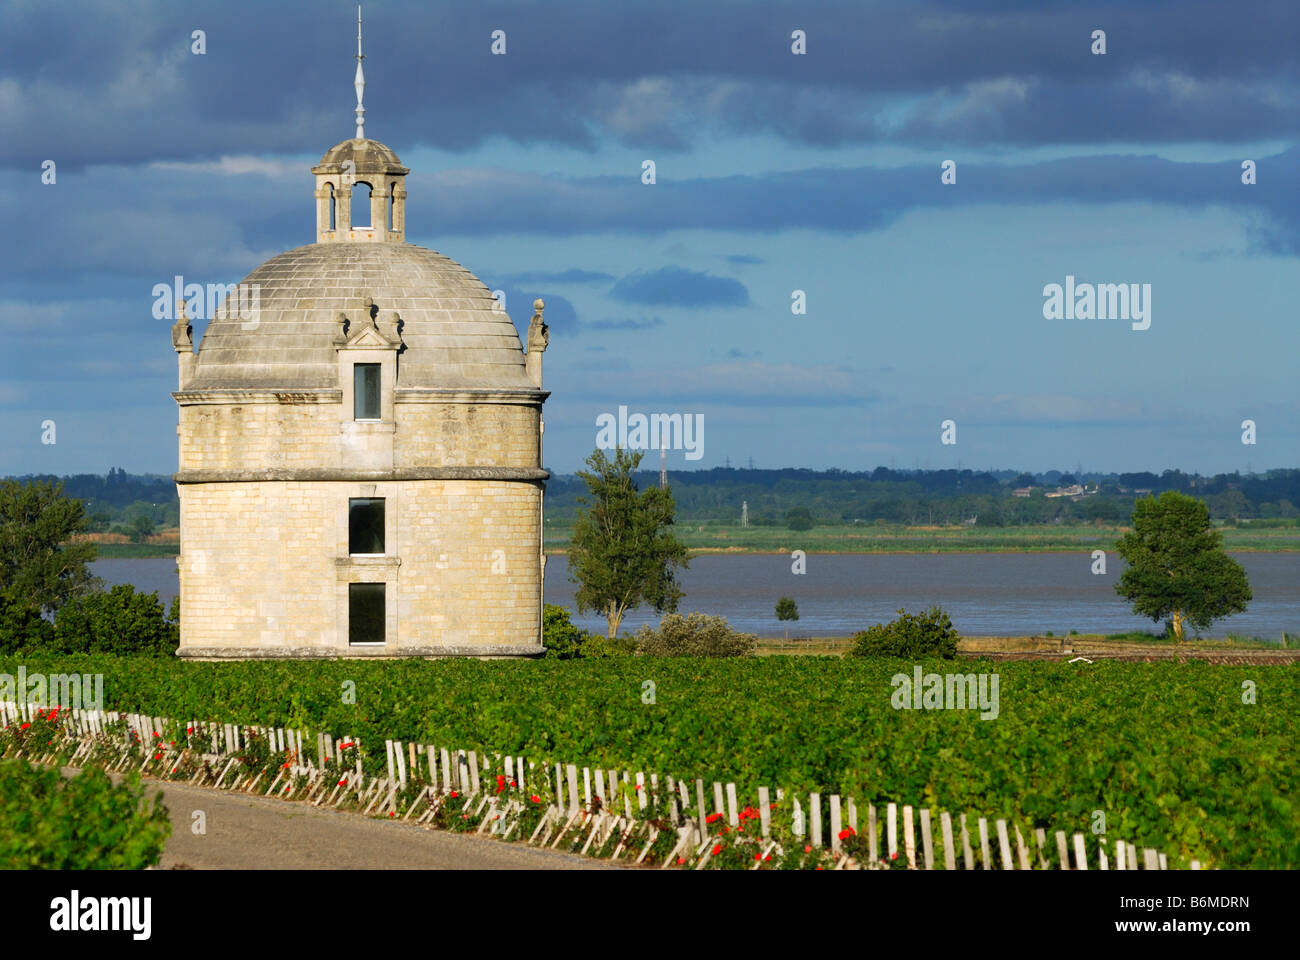 Pauillac France Chateau Latour Pigeonnier Pidgeon house se trouve entre les vignes l'estuaire de la Gironde dans l'arrière-plan Banque D'Images